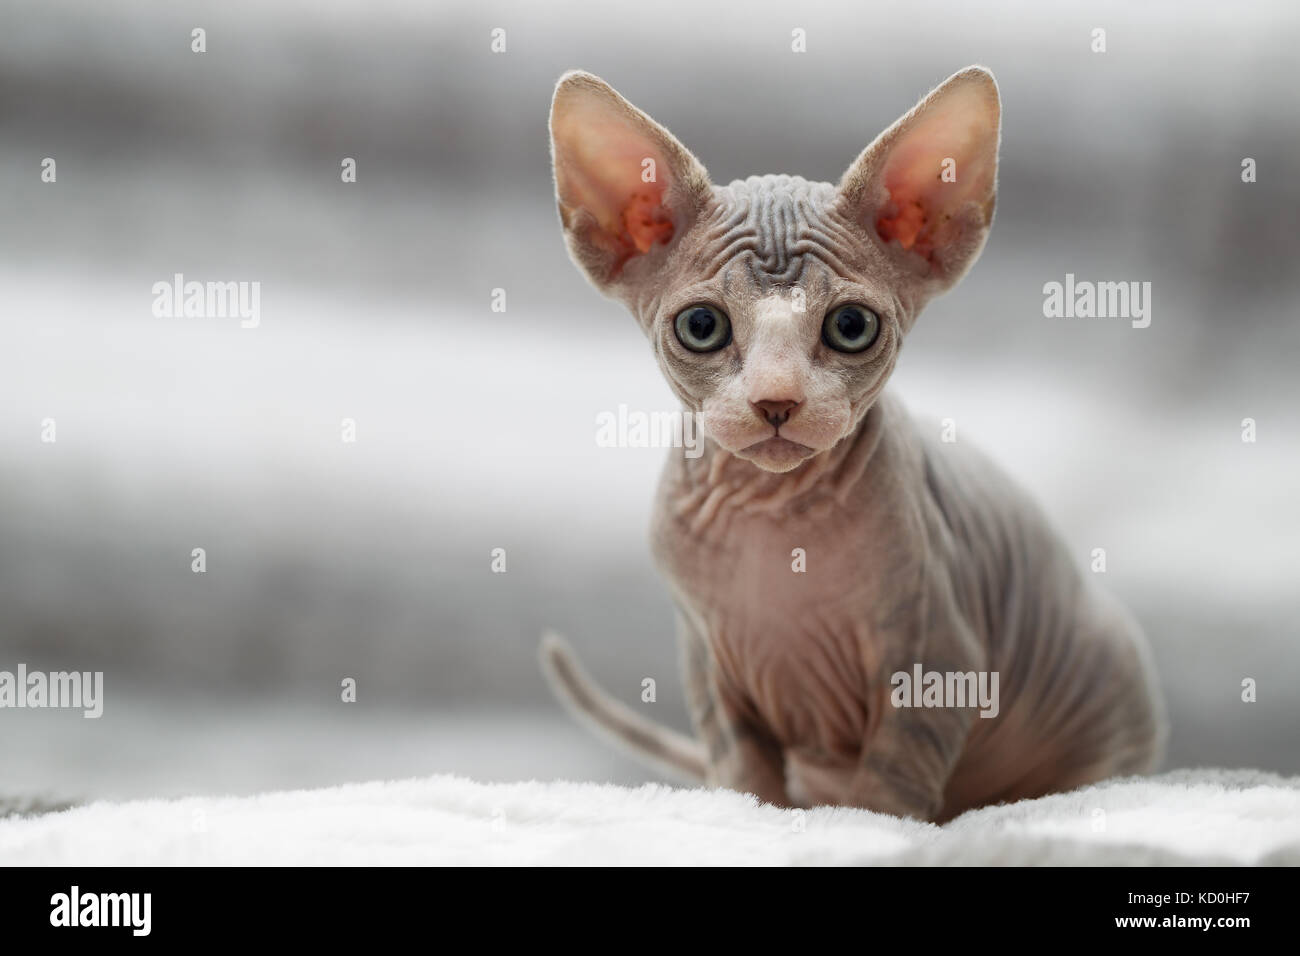 Retrato de animales sphynx cat mirando a la cámara Foto de stock